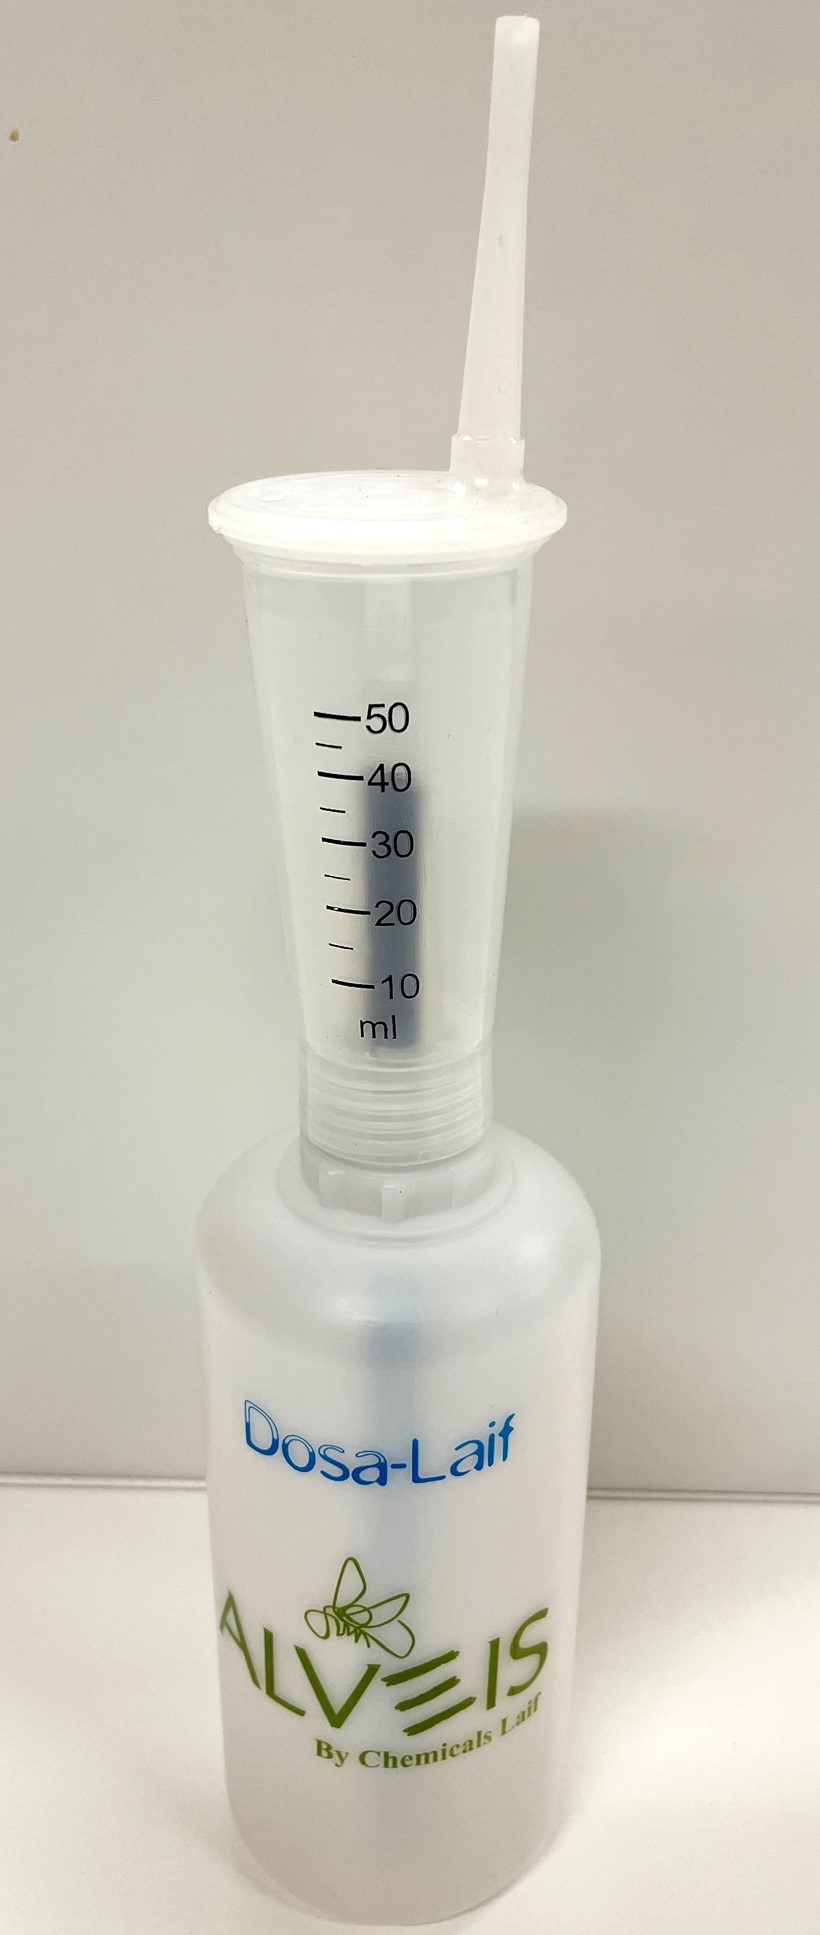 Dosa-Laif, Dosierflasche aus Kunststoff 600 ml Inhalt, für Dosiermengen von 10-50 ml